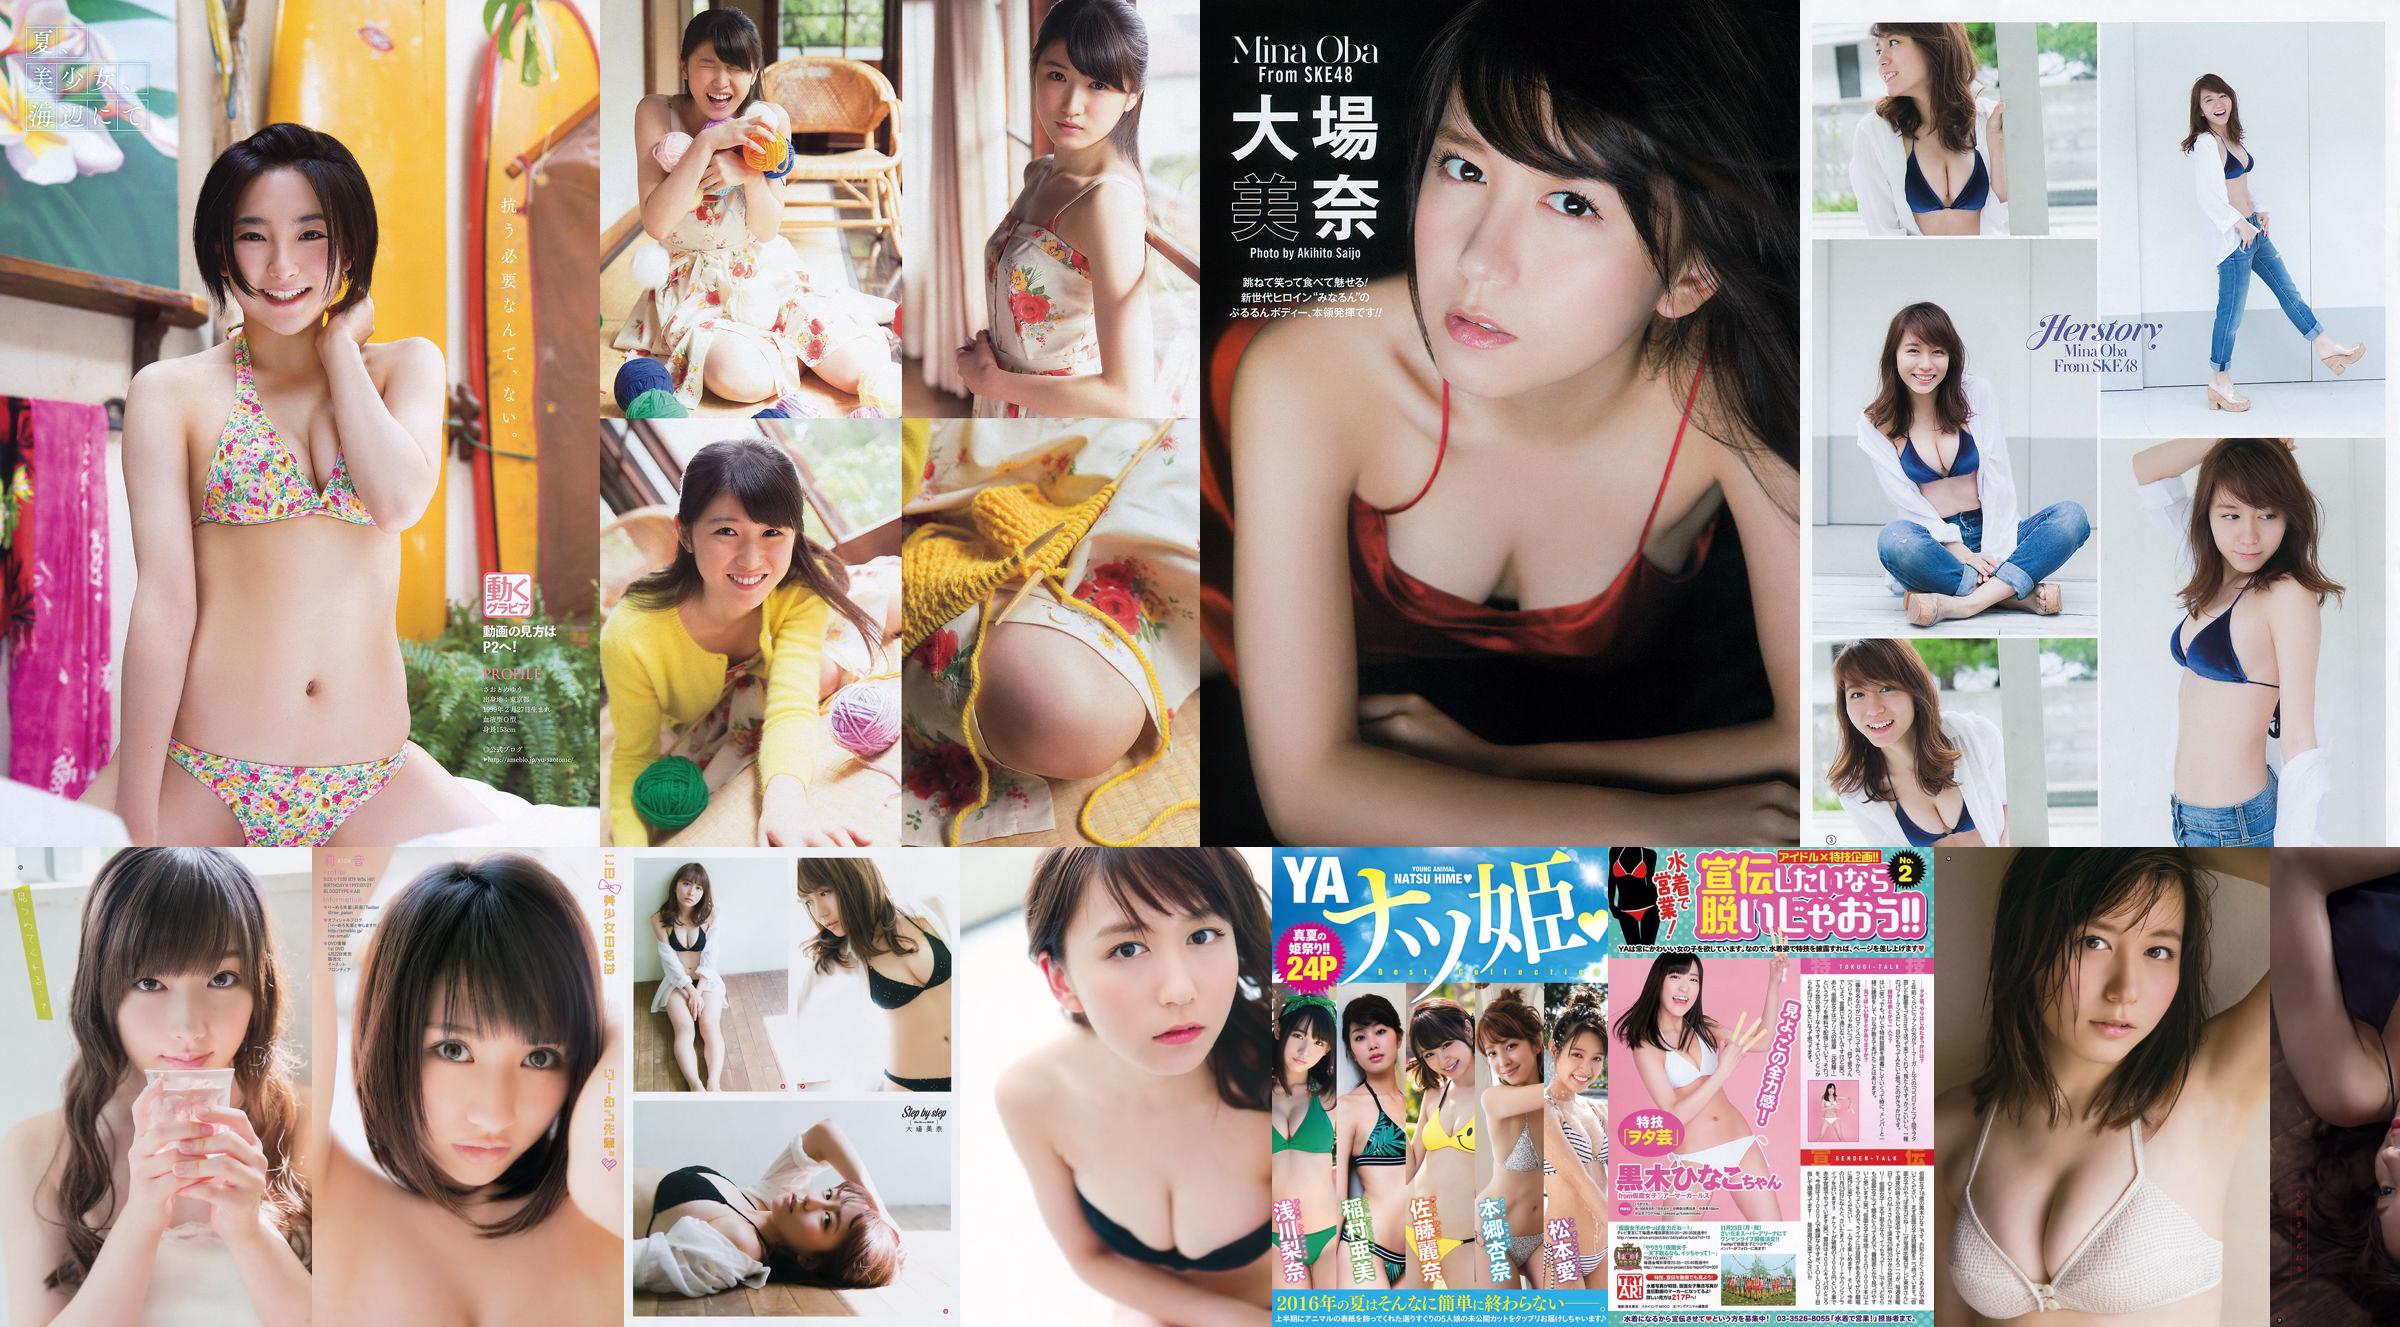 [Young Gangan] Mina Oba You Kikkawa Hitomi Yasueda 2015 No.10 Photograph No.197e09 Page 1